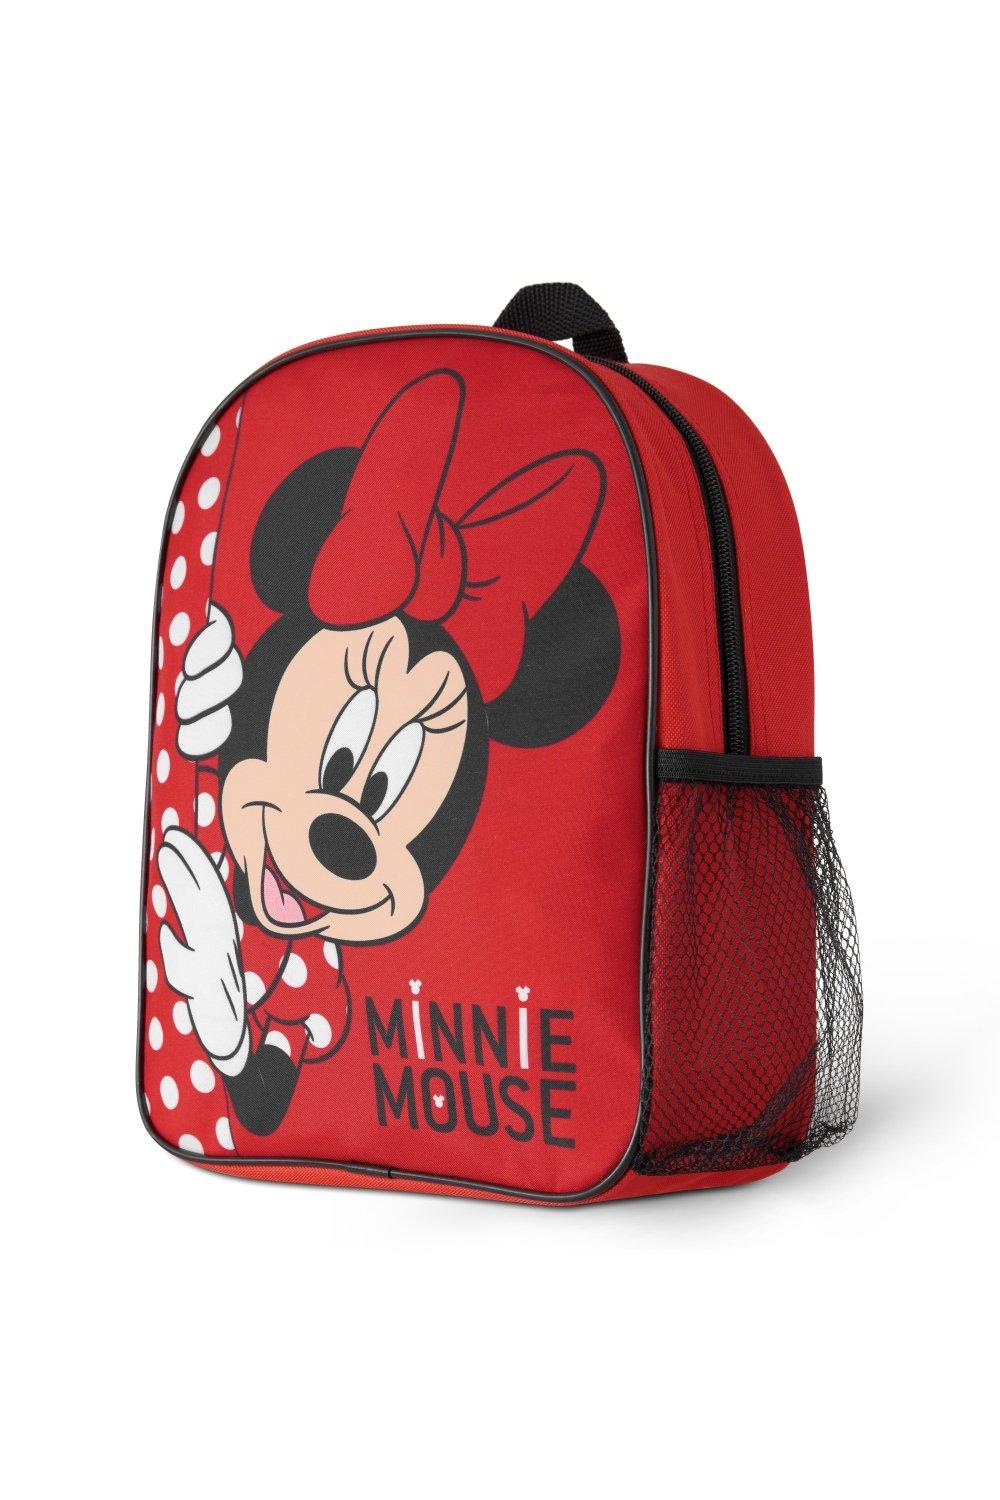 Рюкзак для девочек Минни Маус Disney, красный рюкзак минни маус mickey mouse синий 4